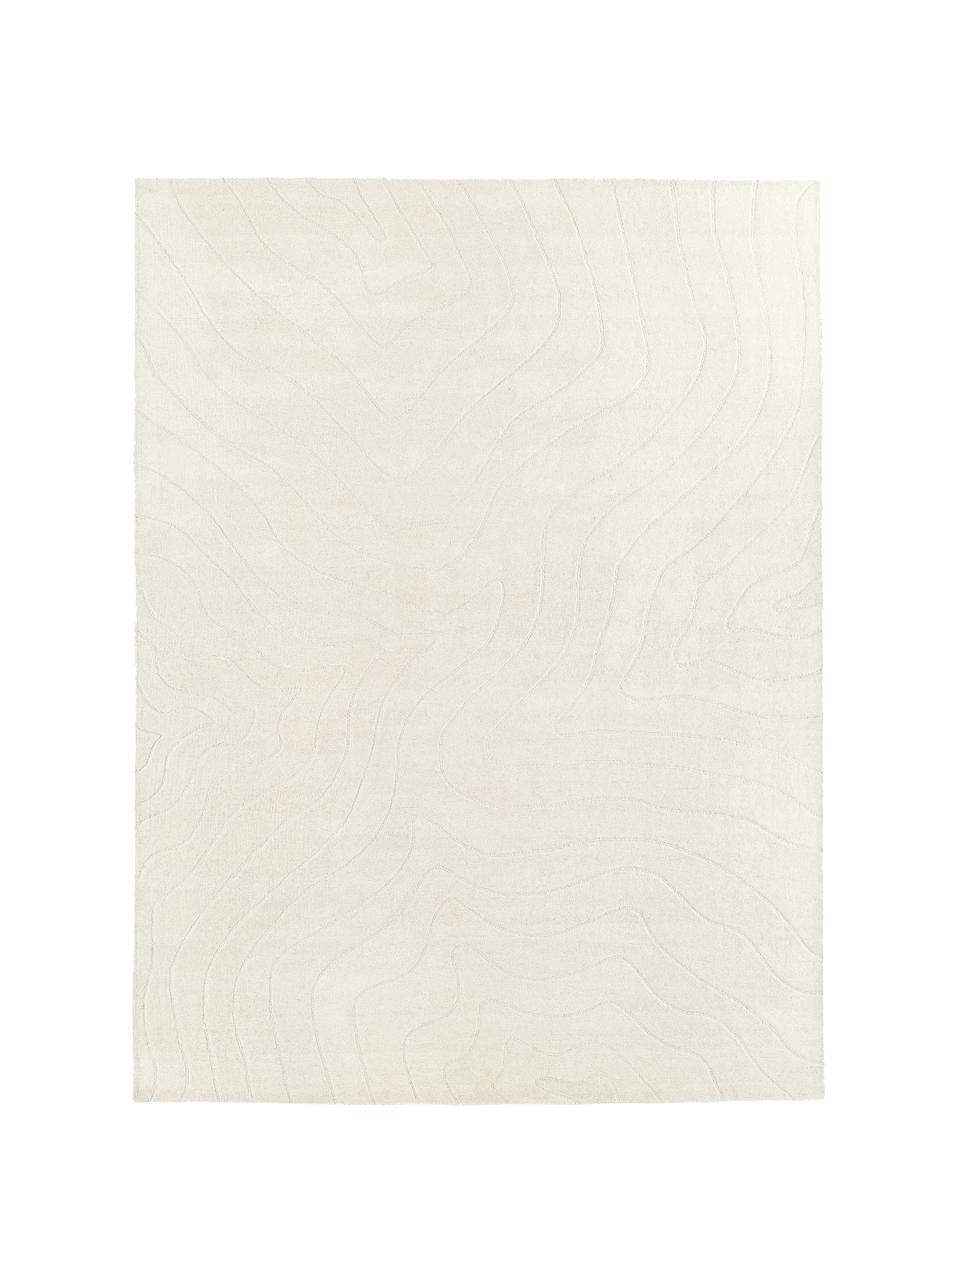 Tapis en laine blanc crème tufté main Aaron, Blanc crème, larg. 300 x long. 400 cm (taille XL)